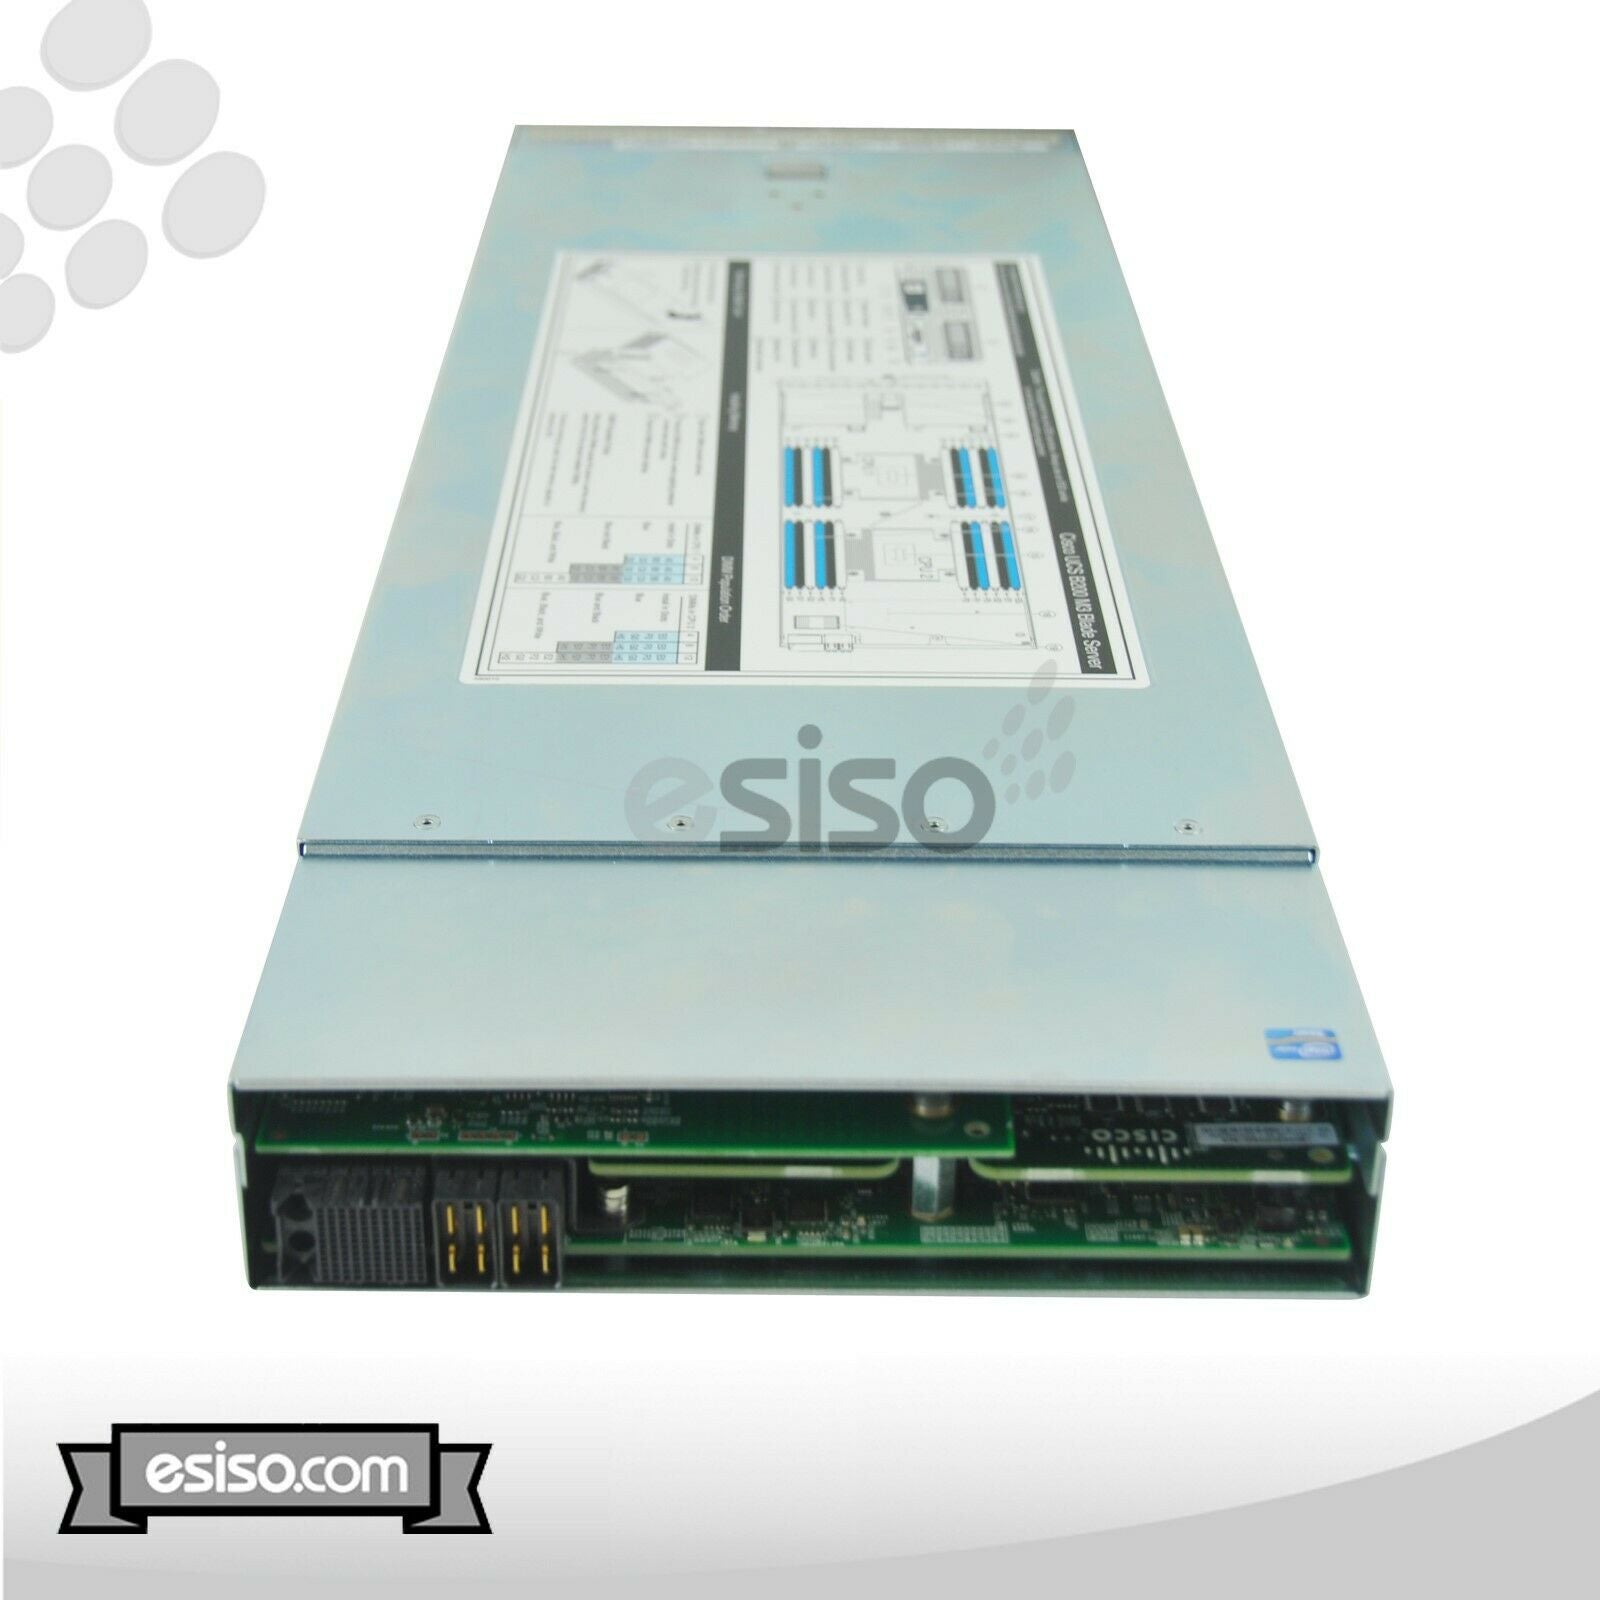 CISCO UCS 5108 CHASSIS 8x B200 M3 2x 8 CORE E5-2660 2.2GHz 32GB RAM 2x 300GB SAS